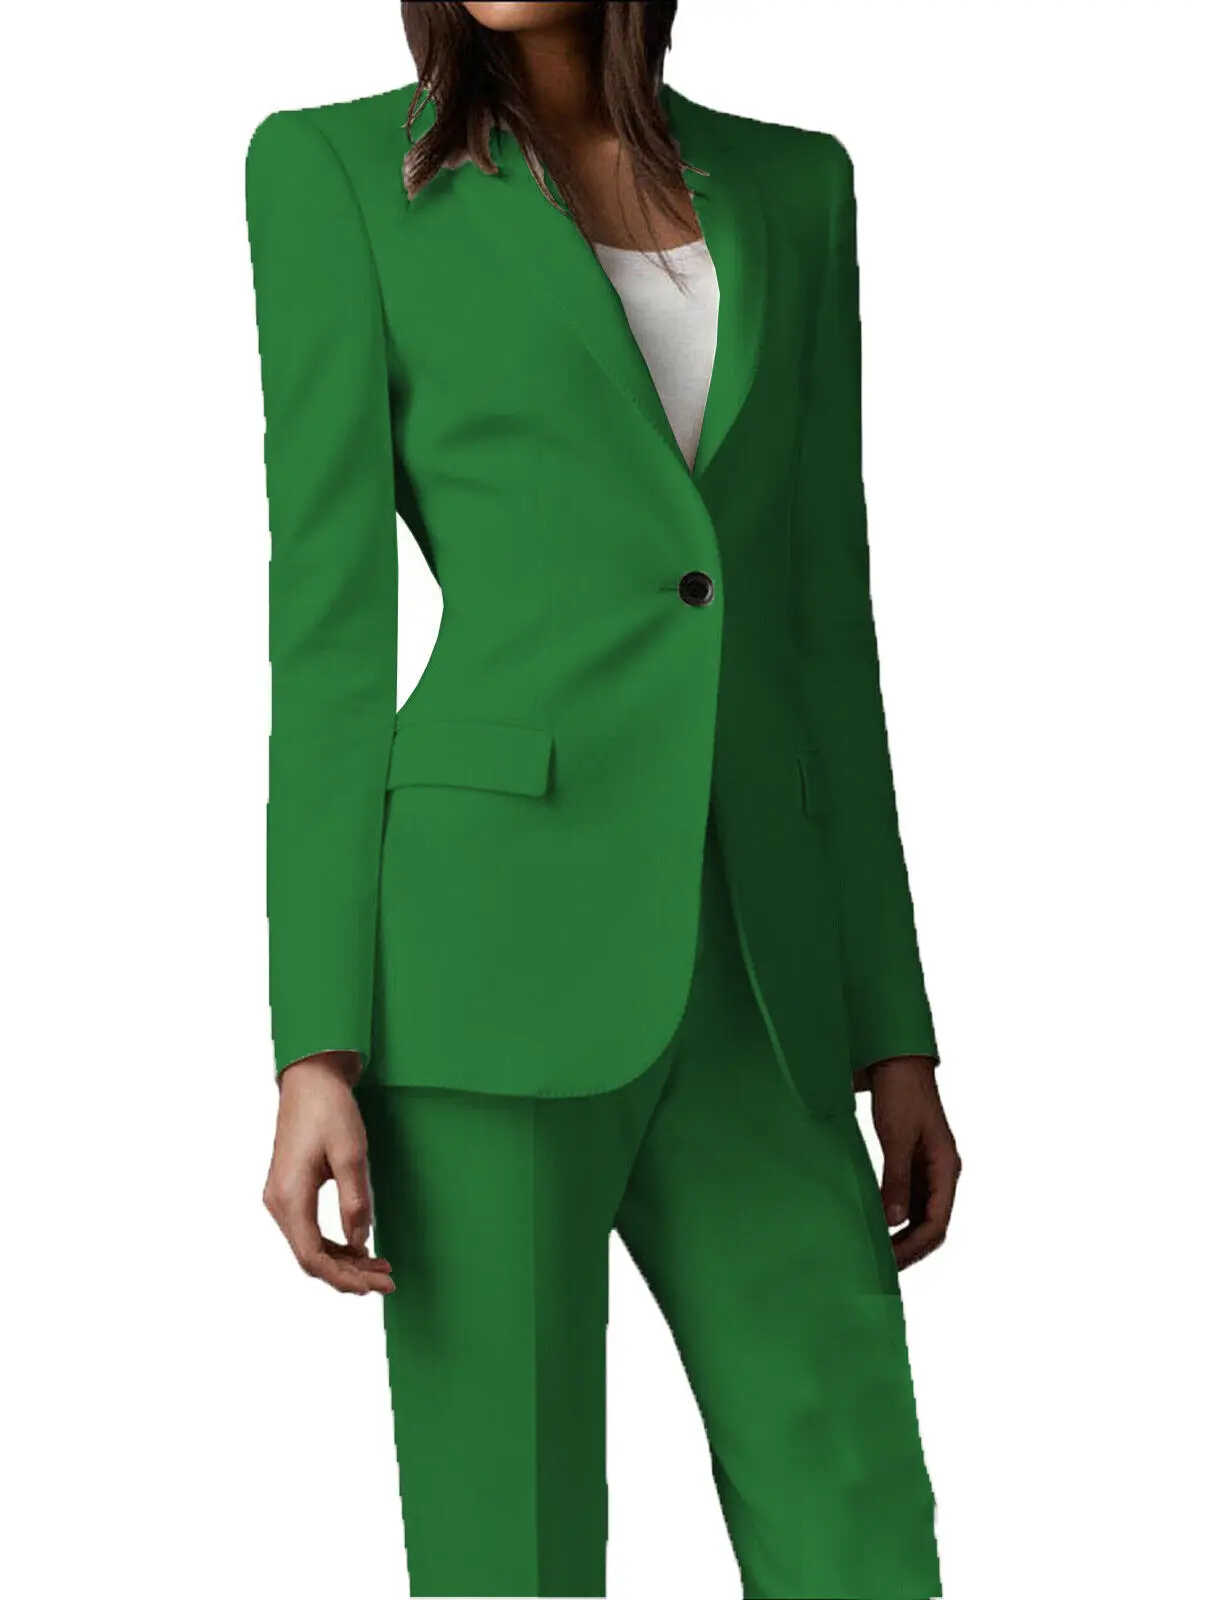 Office Ladies Women's Suit 2 Piece（Coat+Pants）Slim Fit Single Buckle Jacket  Business Classic Set  Formal